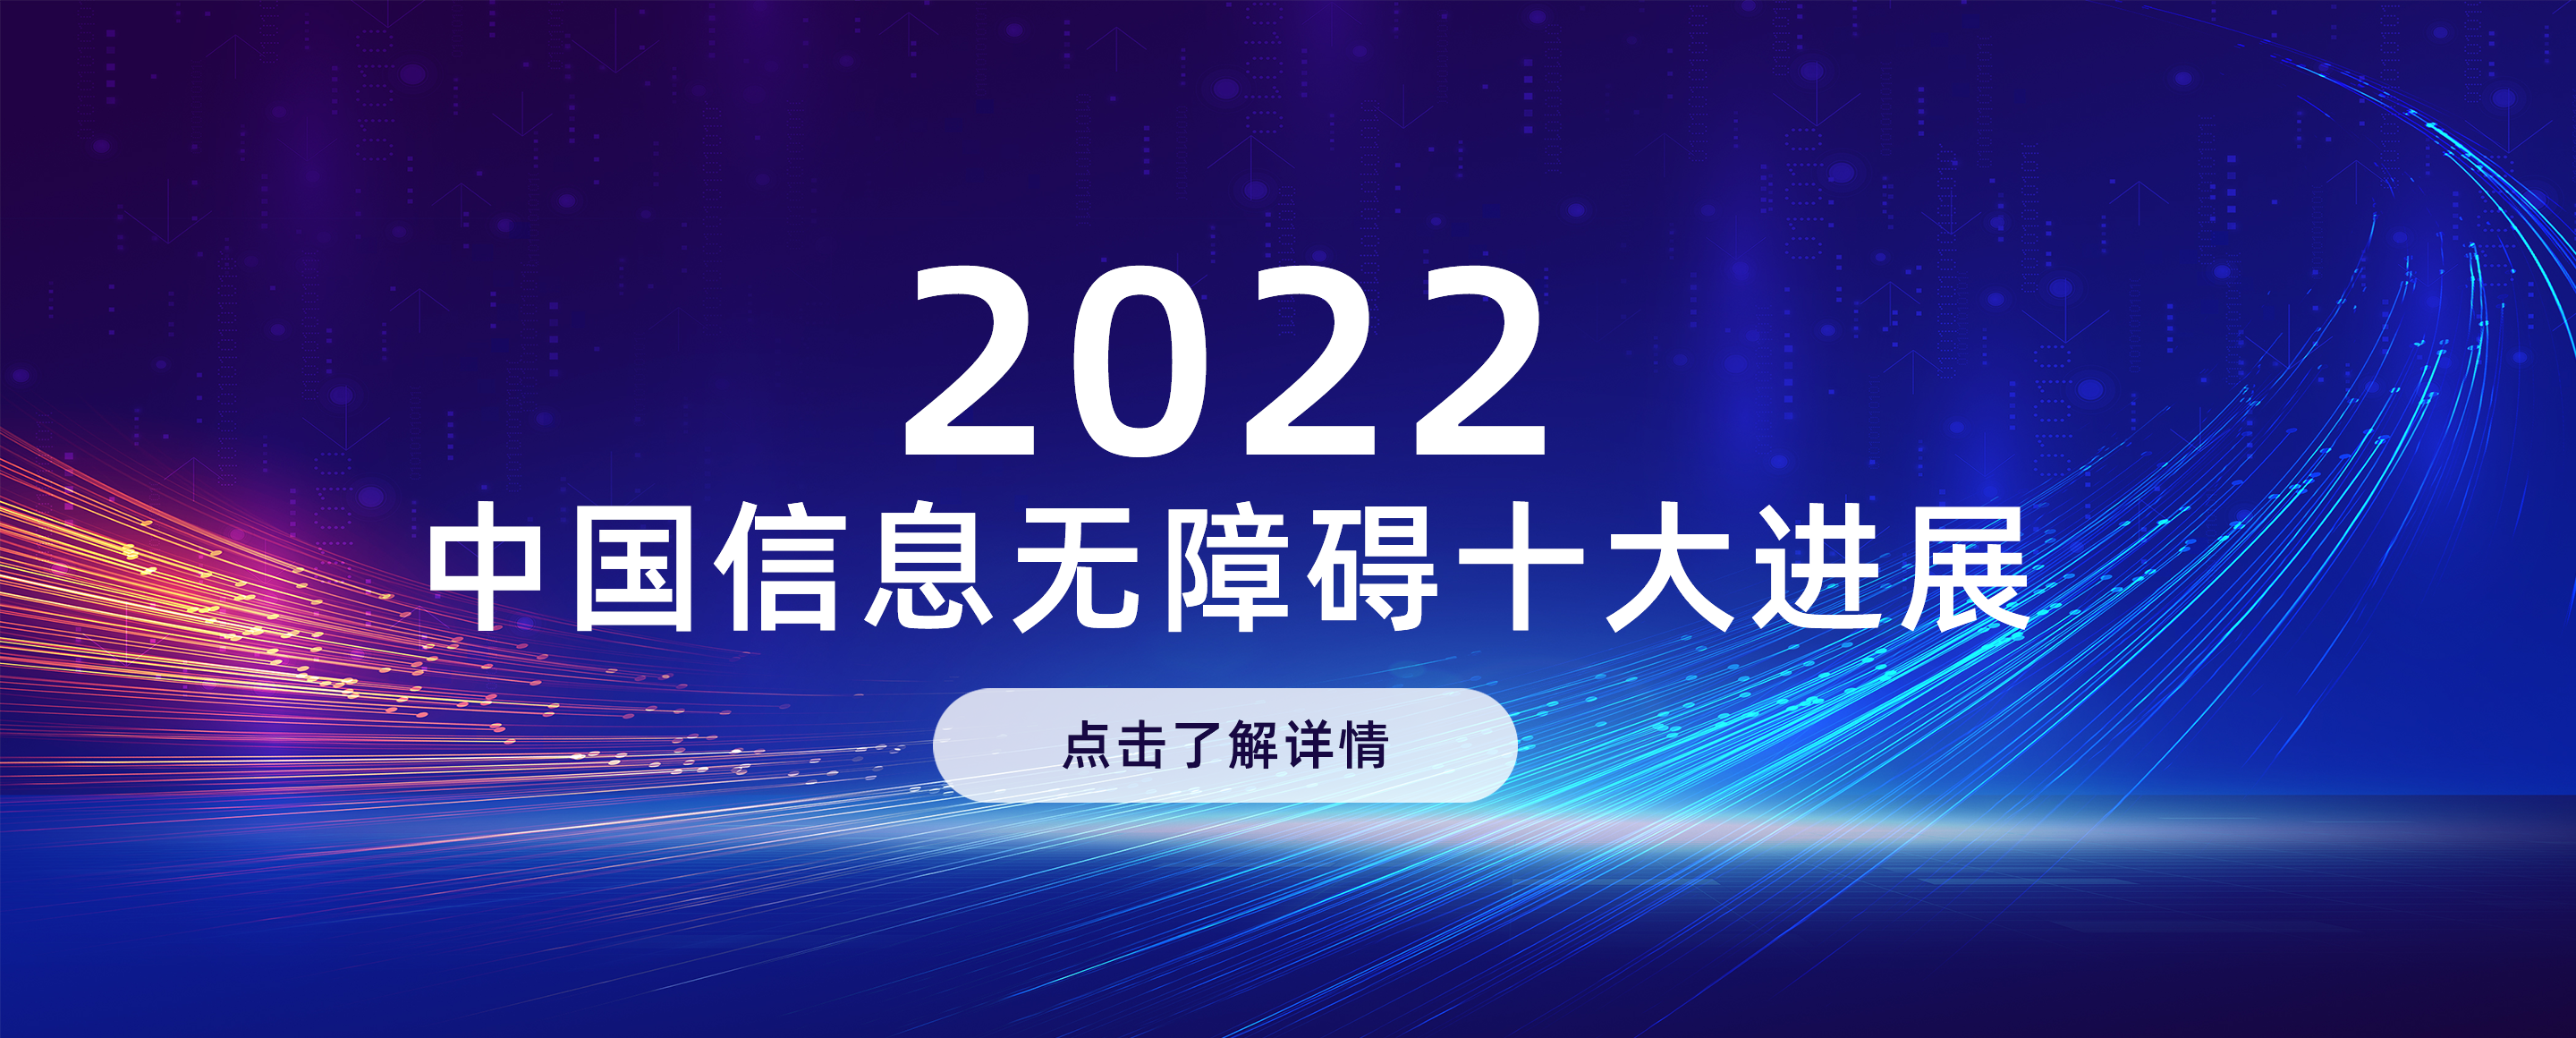 2022中国信息无障碍十大进展